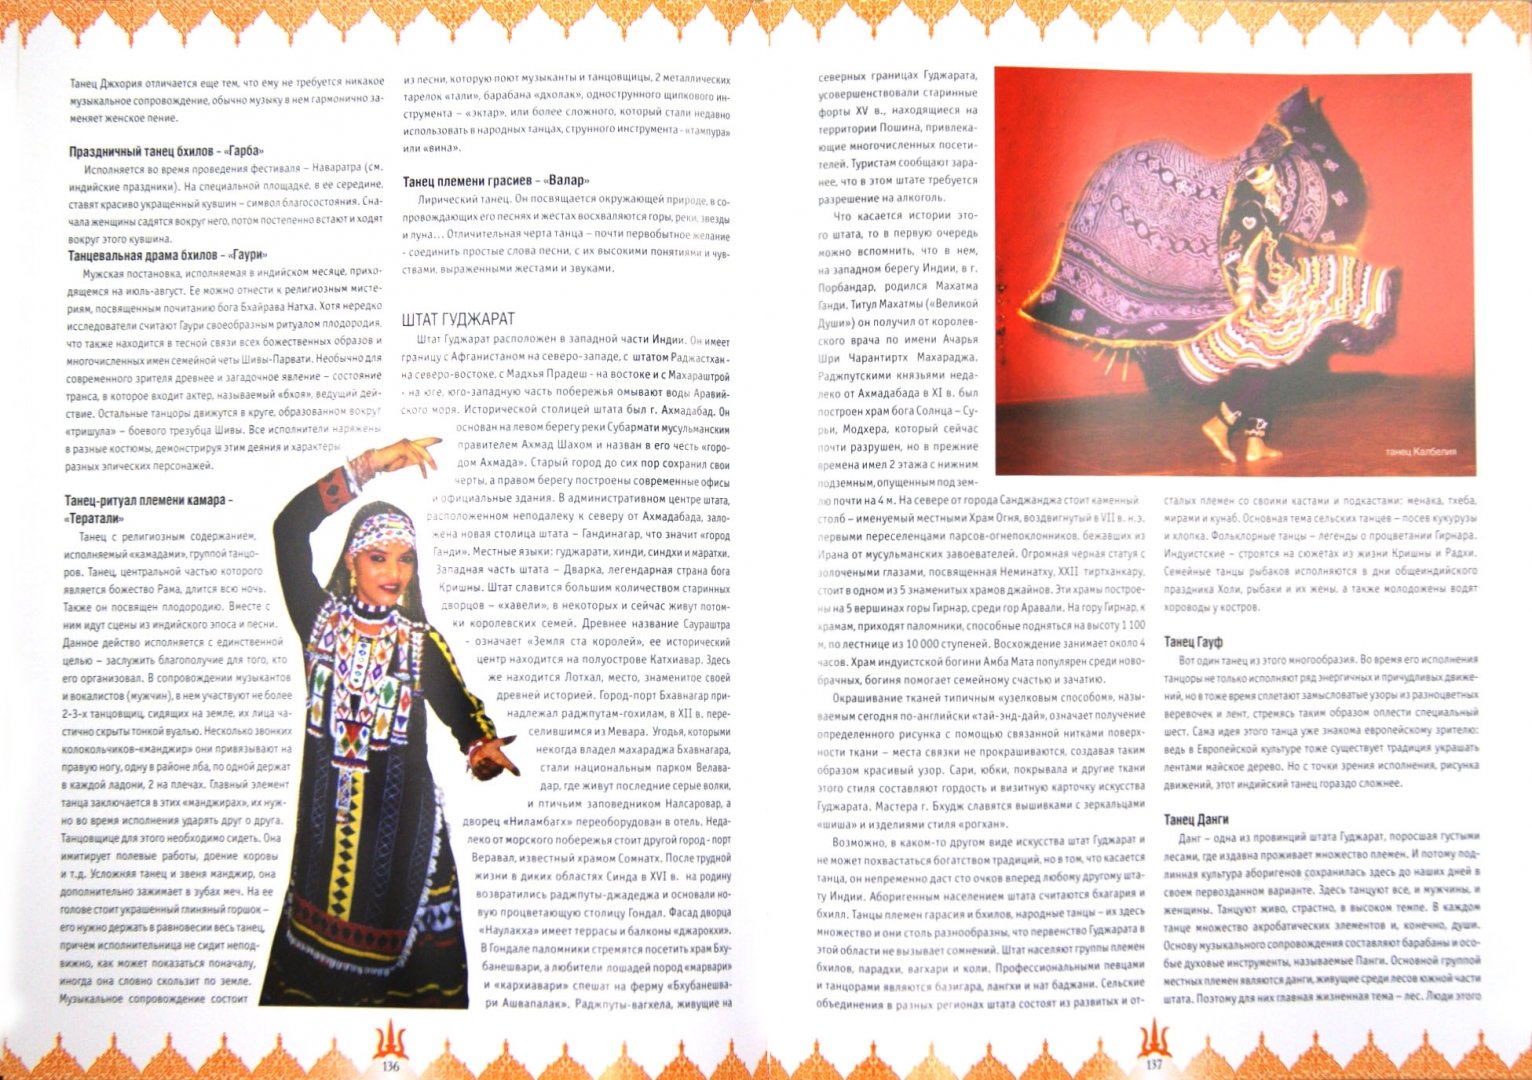 Иллюстрация 1 из 8 для Танцующие с Богами. Индийская энциклопедия - Д. Арти | Лабиринт - книги. Источник: Лабиринт